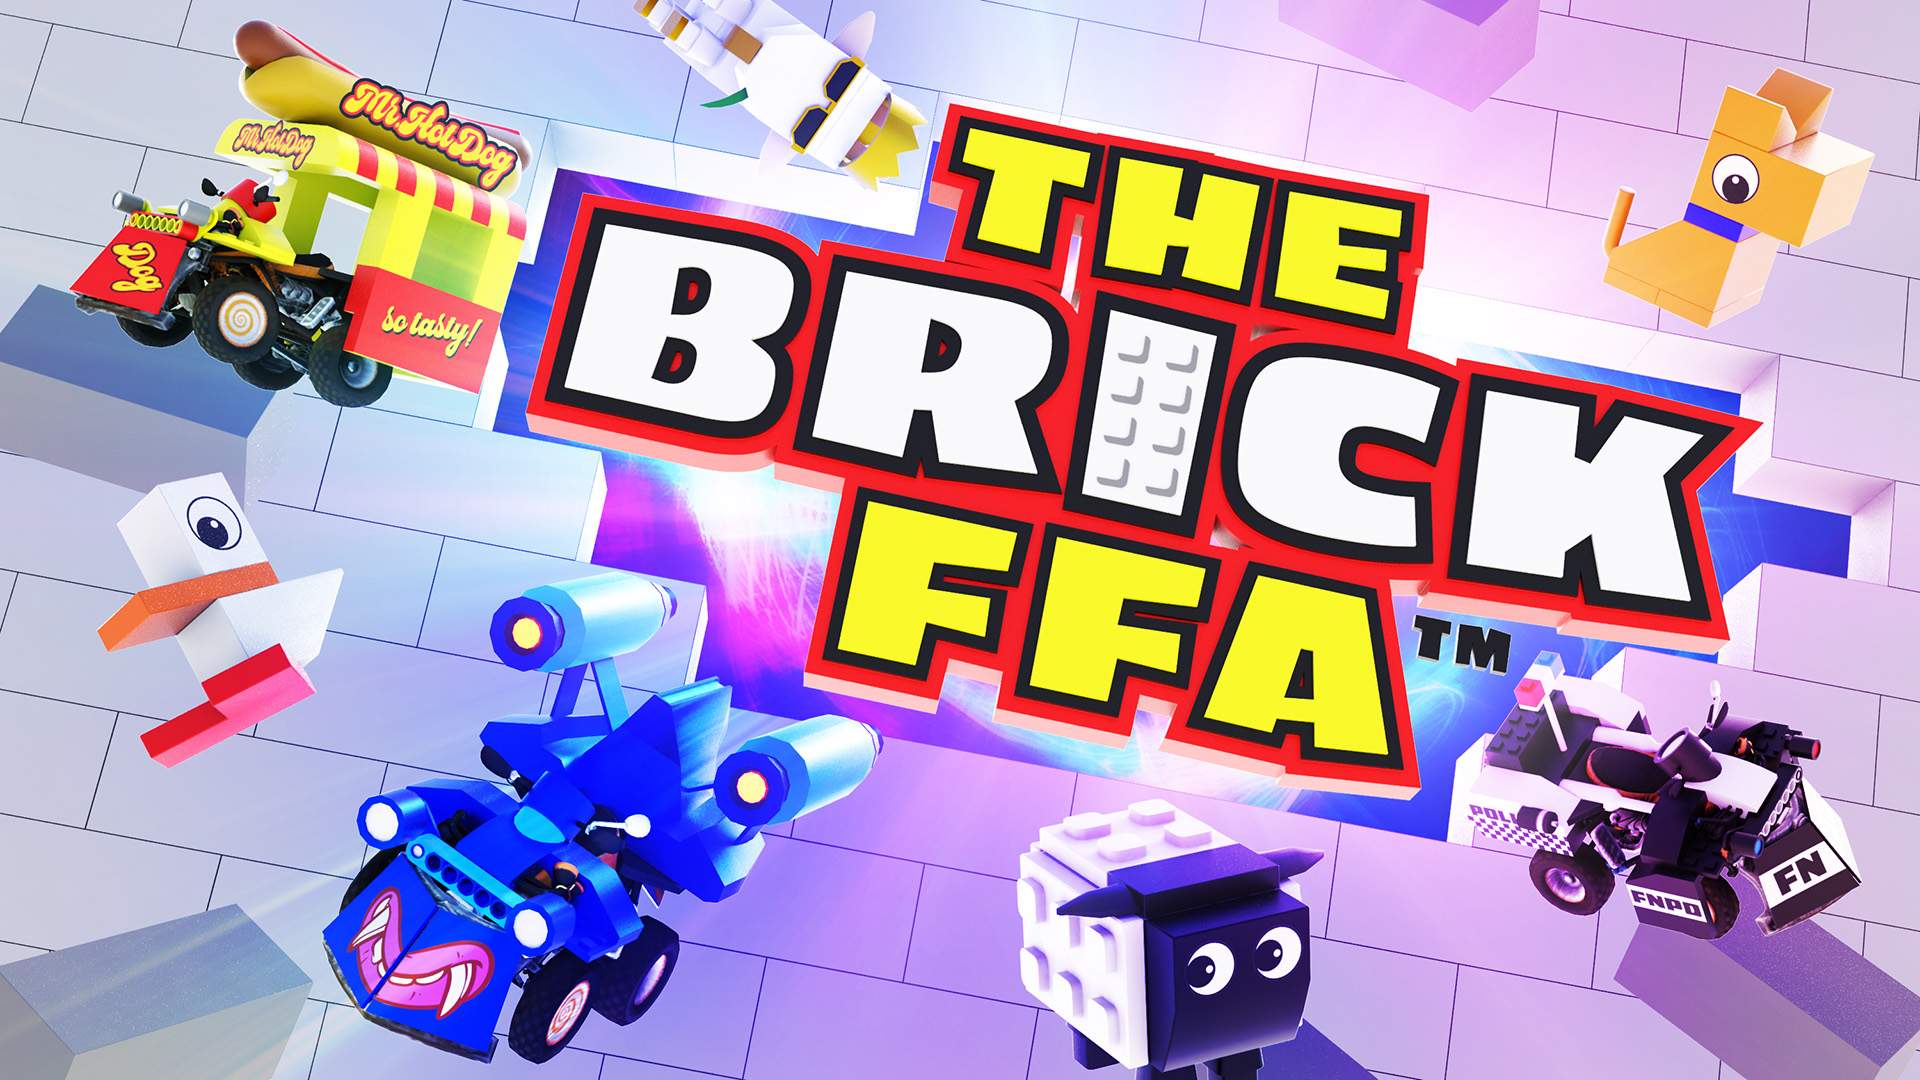 The Brick FFA™